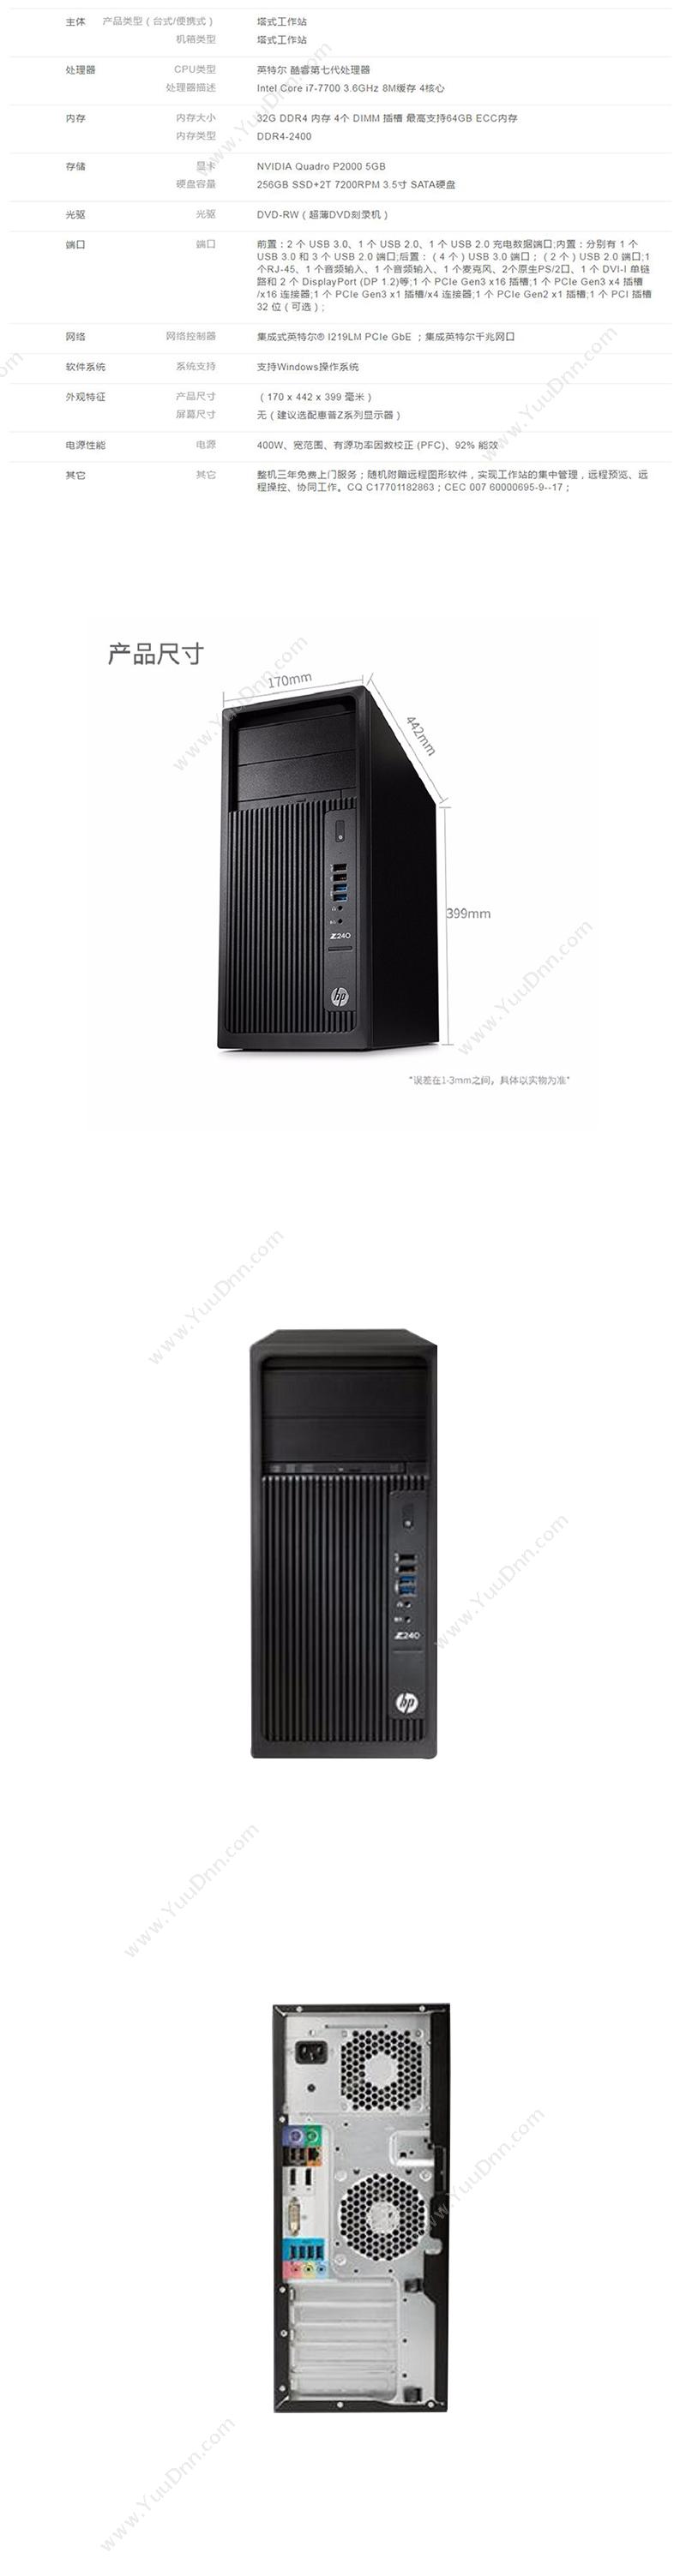 惠普 HP Z240 Tower Workstation 工作站    Intel Core i7-7700/32GB/256GB+2TB/P2000 5GB显卡 台式工作站